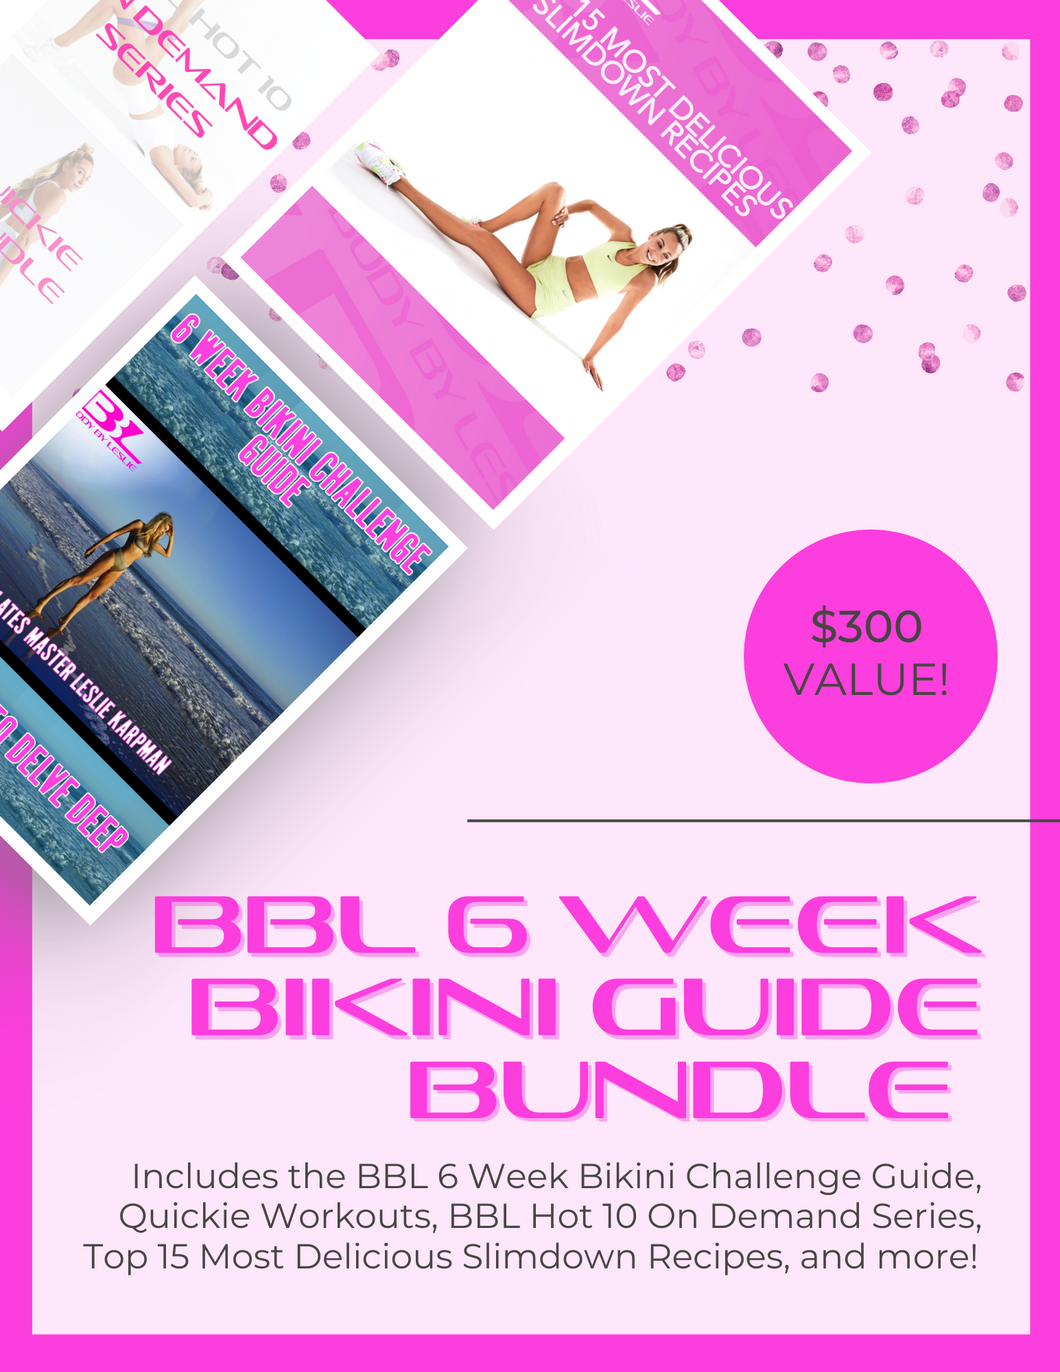 BBL 6 Week Bikini Guide Bundle